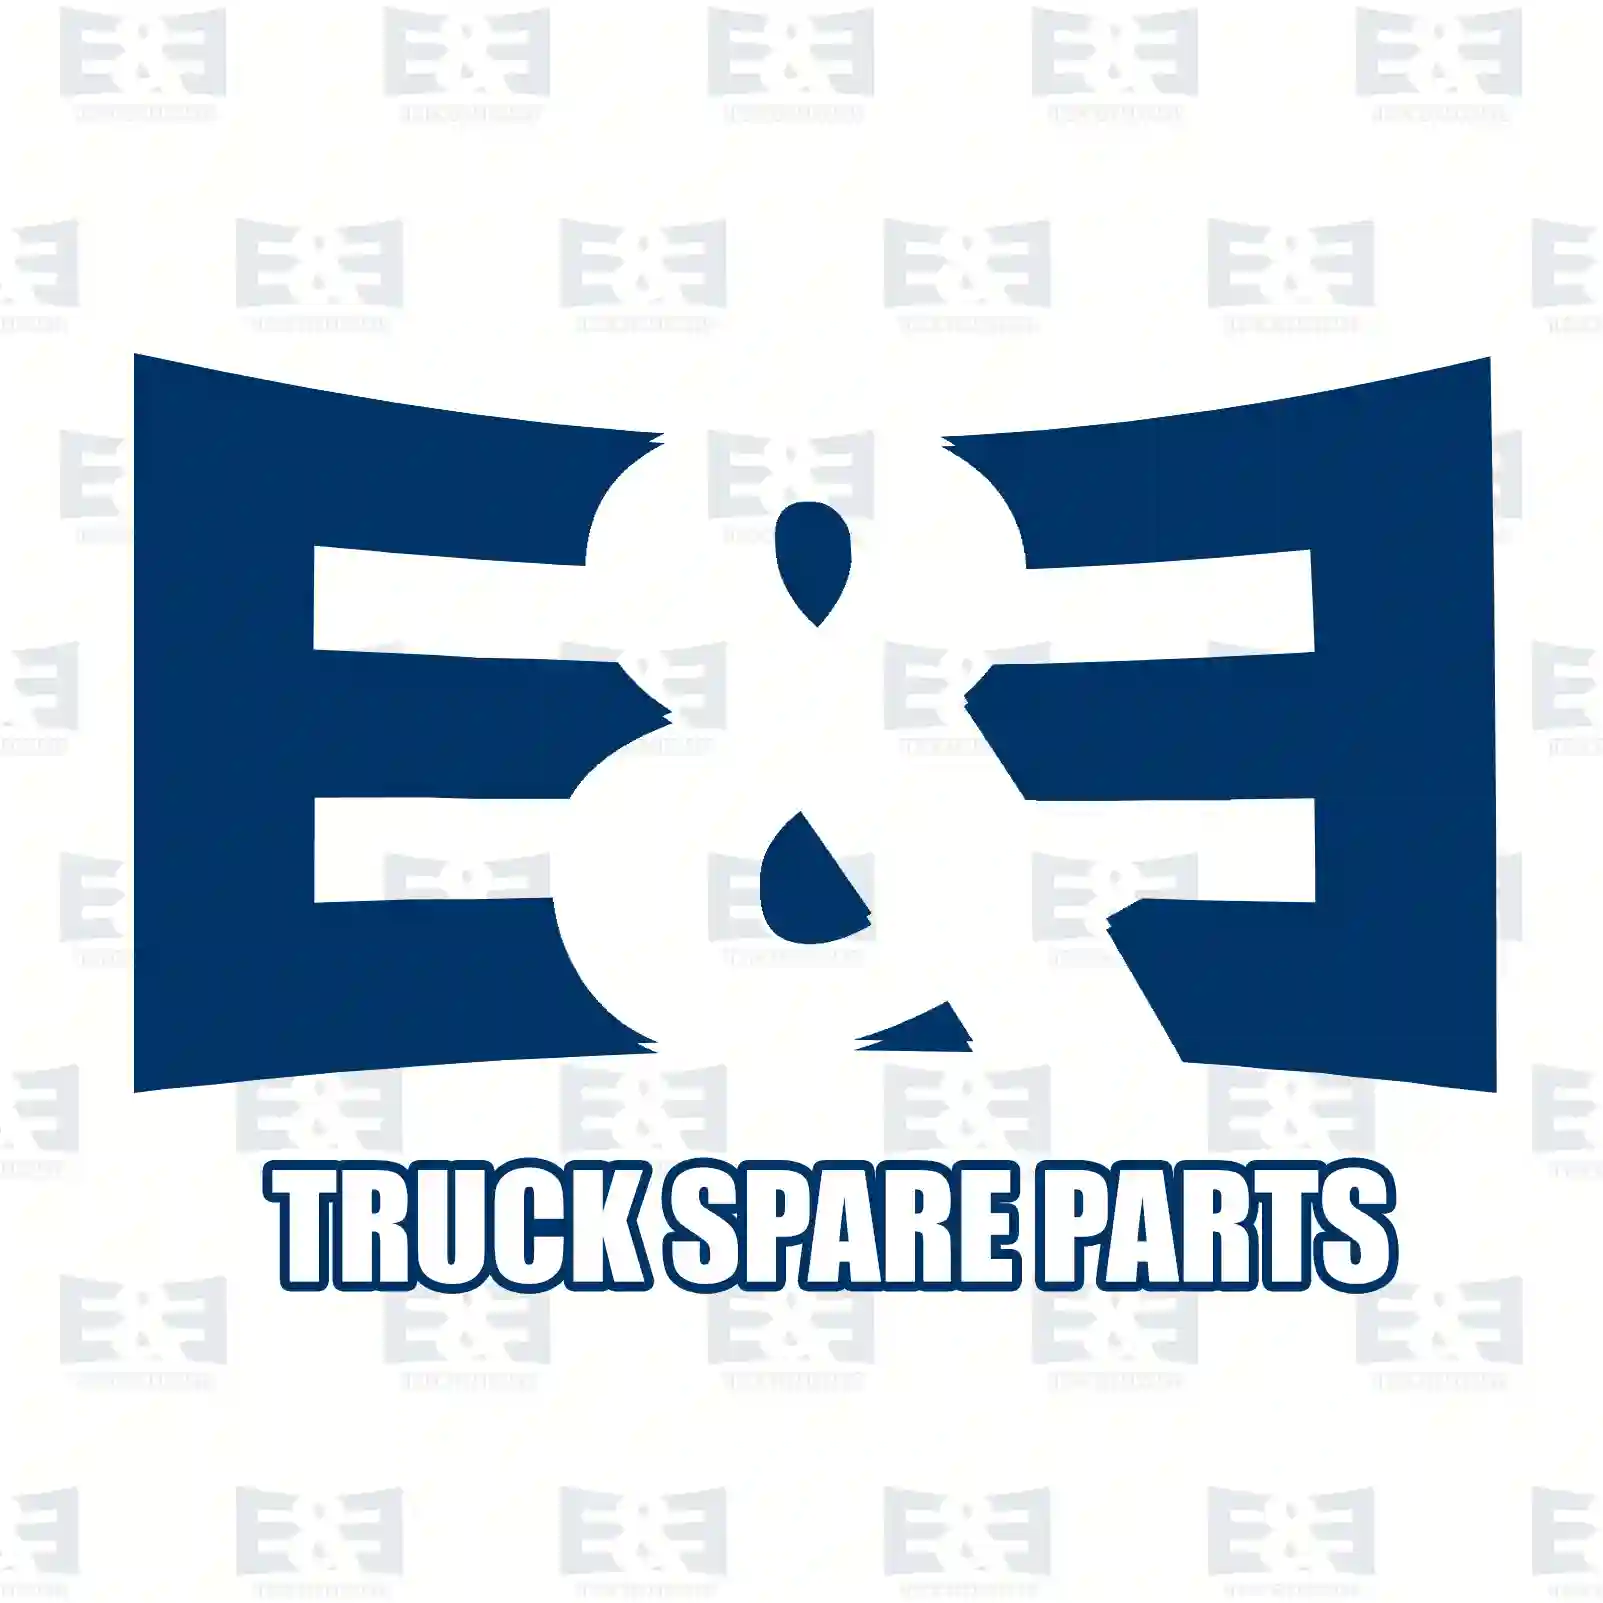 O-ring, 2E2285942, 7400967343, 967343, ZG02890-0008 ||  2E2285942 E&E Truck Spare Parts | Truck Spare Parts, Auotomotive Spare Parts O-ring, 2E2285942, 7400967343, 967343, ZG02890-0008 ||  2E2285942 E&E Truck Spare Parts | Truck Spare Parts, Auotomotive Spare Parts